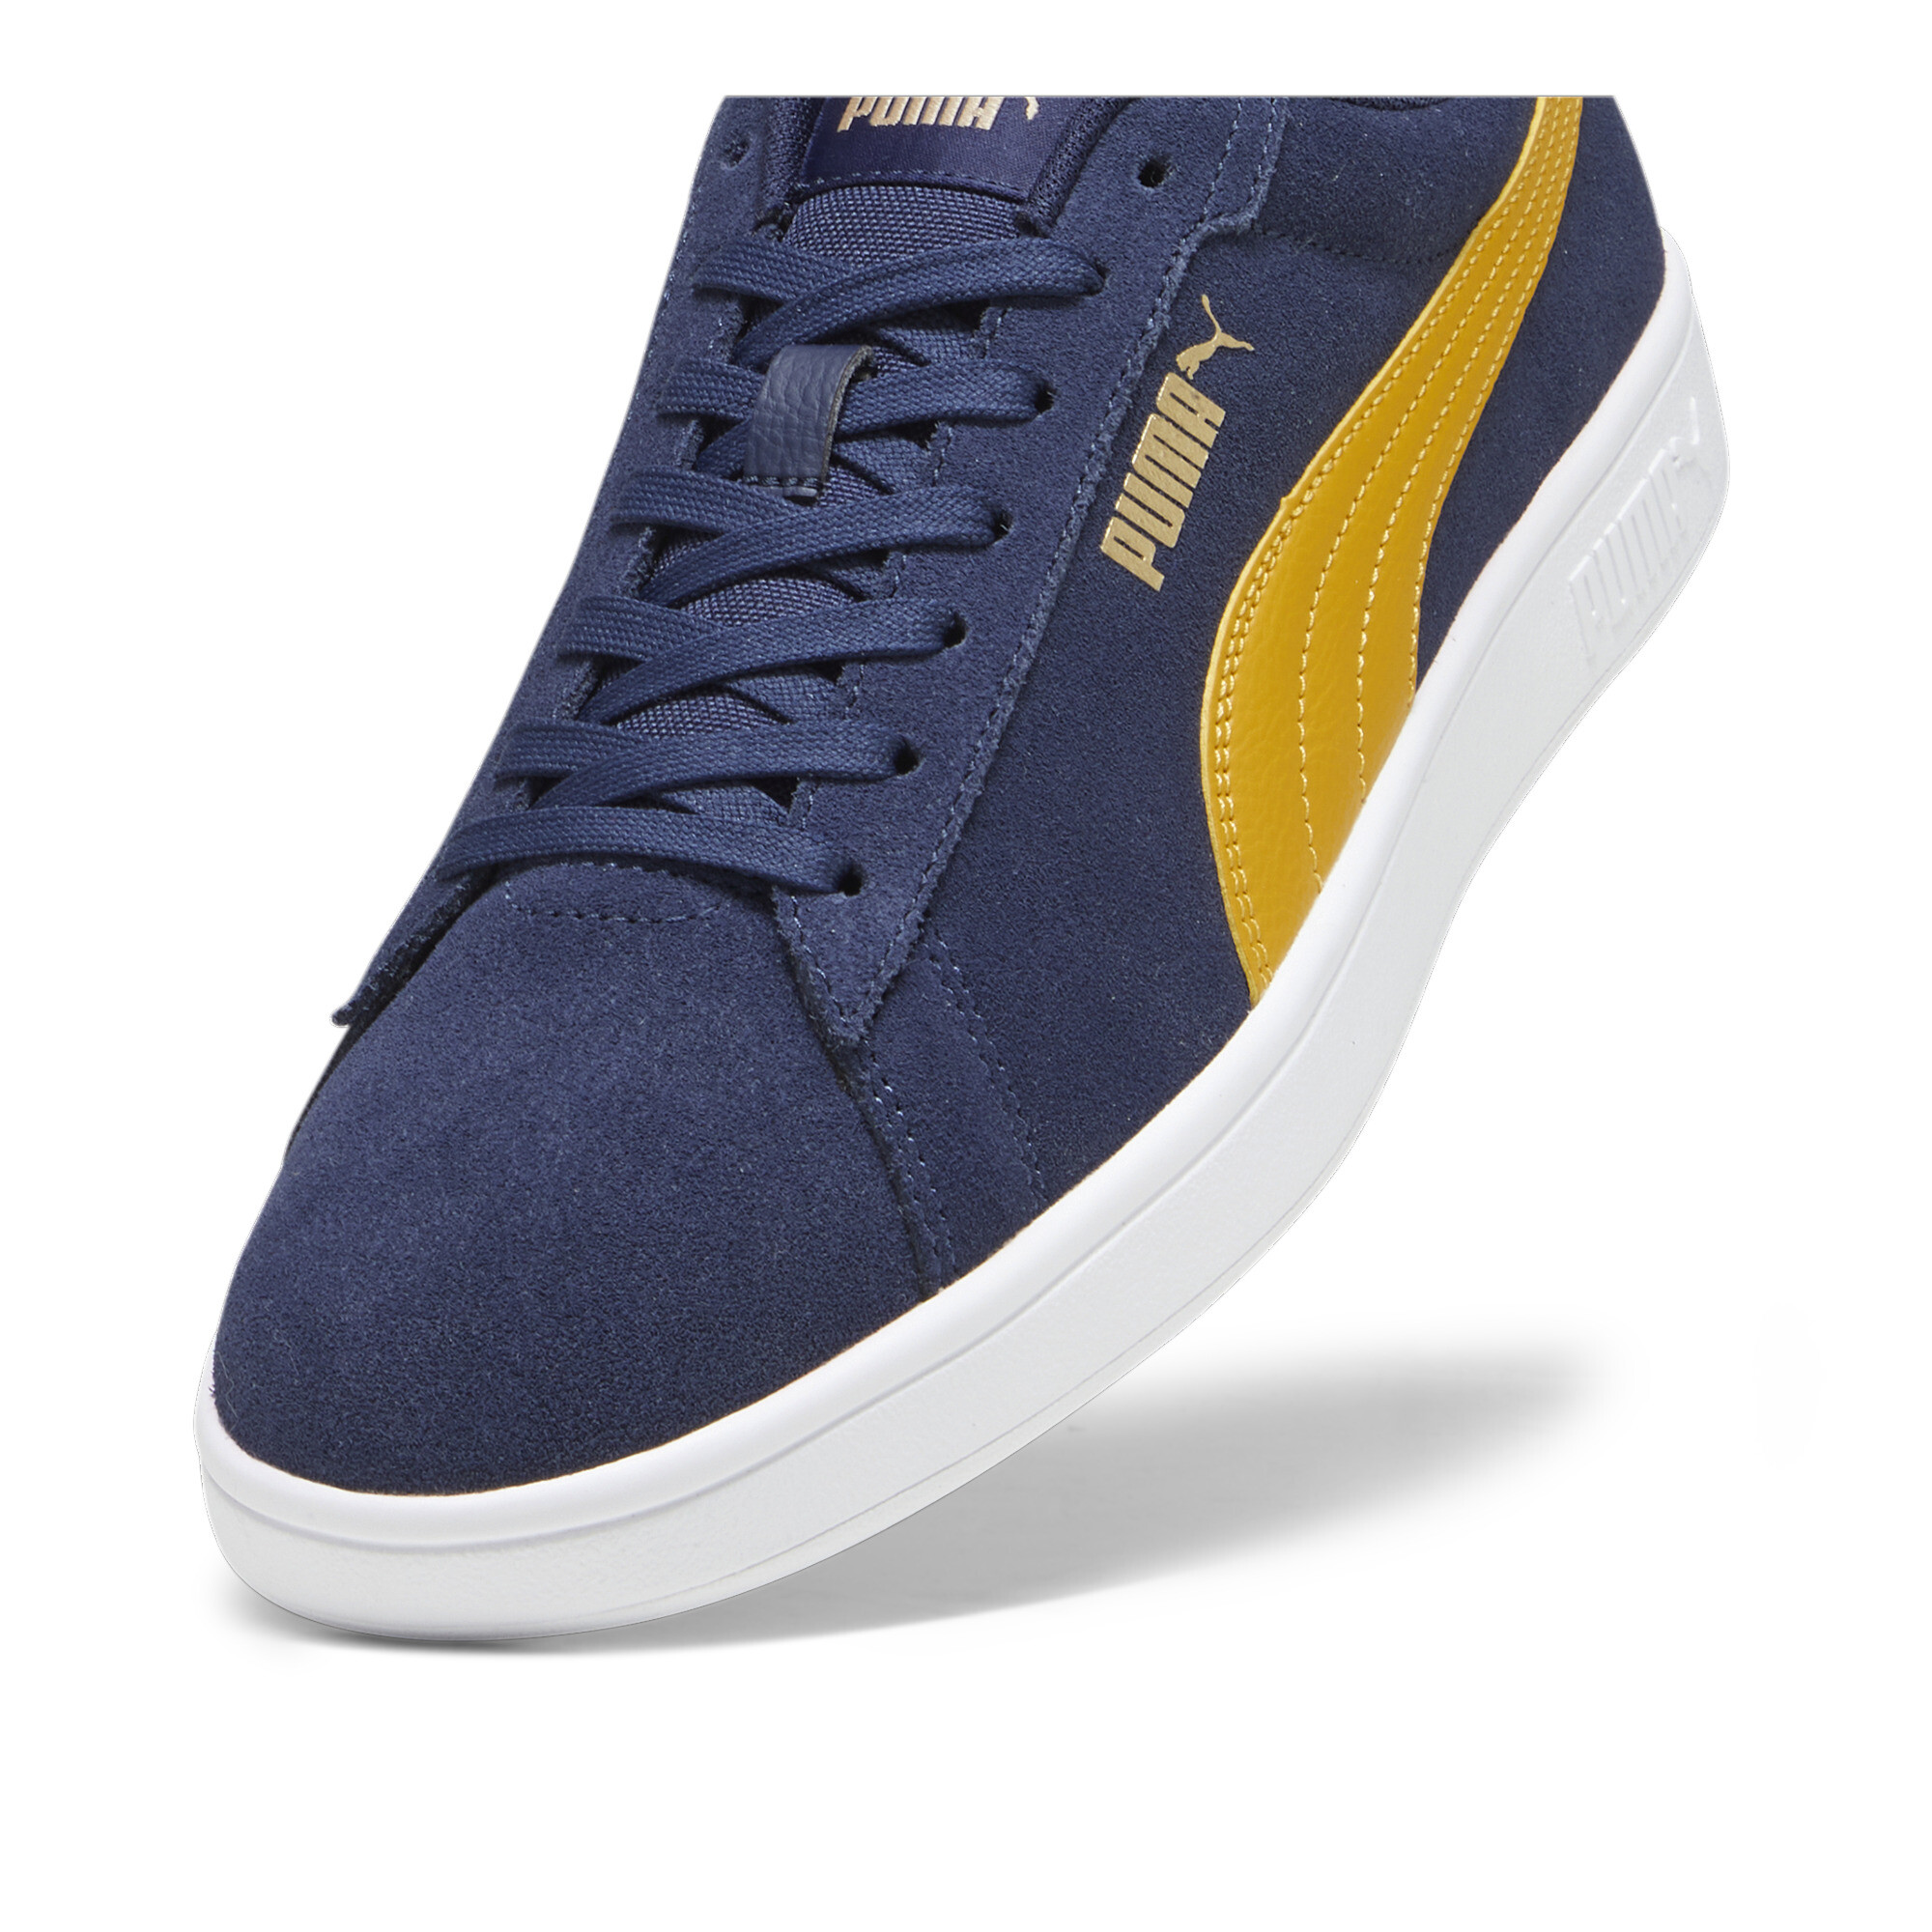 Puma Smash 3.0 Sneakers, Blue, Size 44.5, Shoes